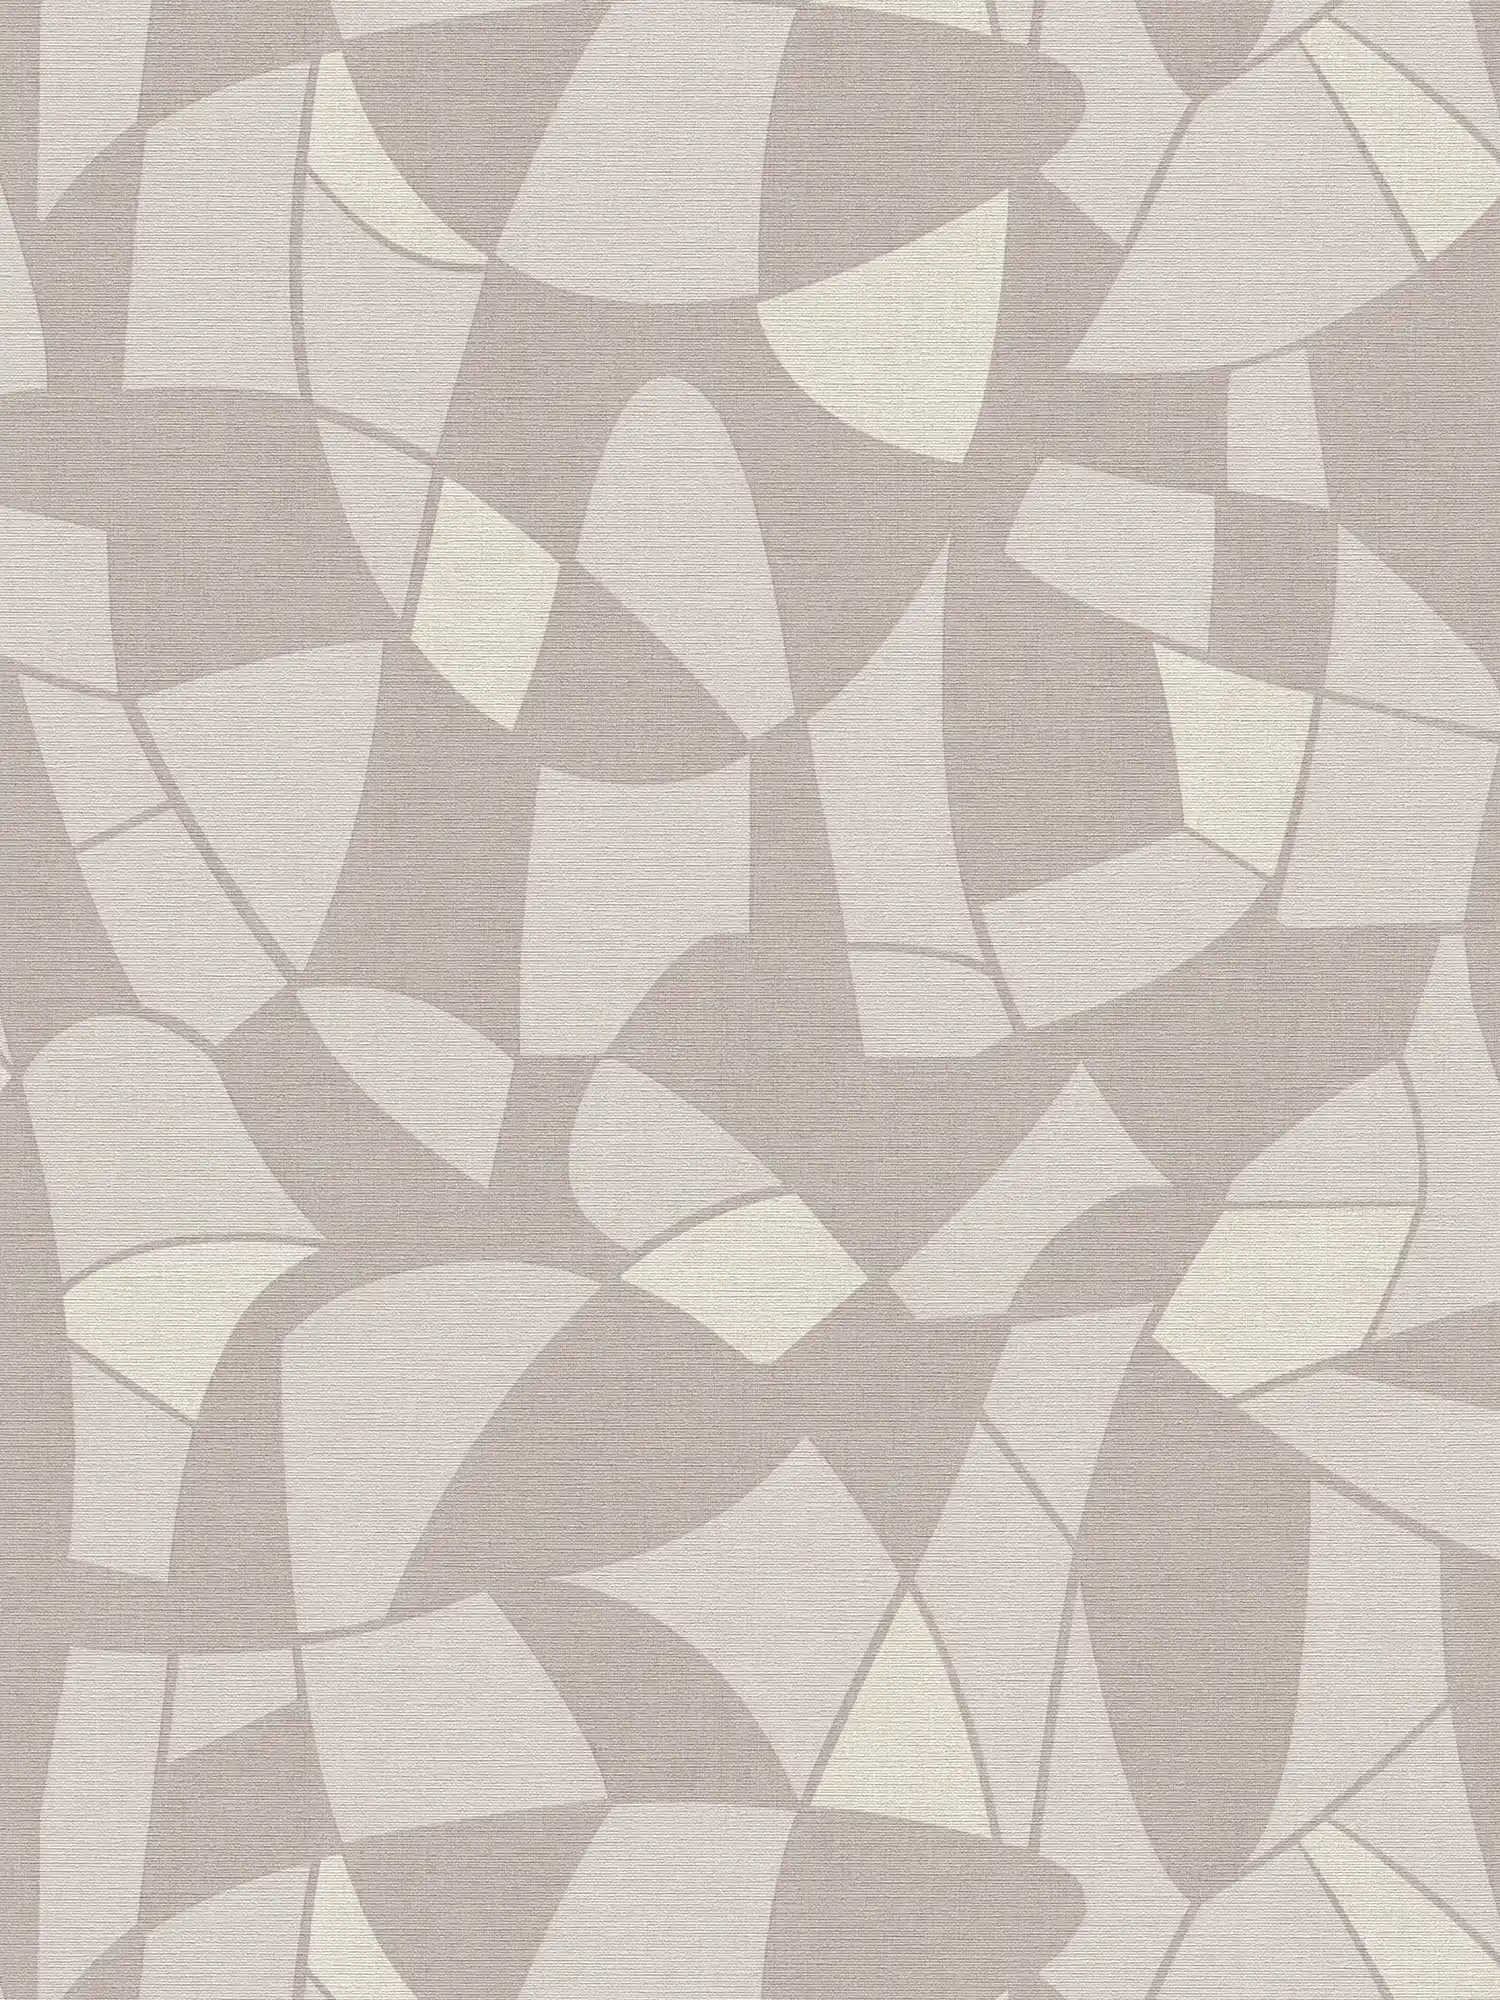             Papier peint intissé aux couleurs subtiles dans un motif abstrait - gris, crème
        